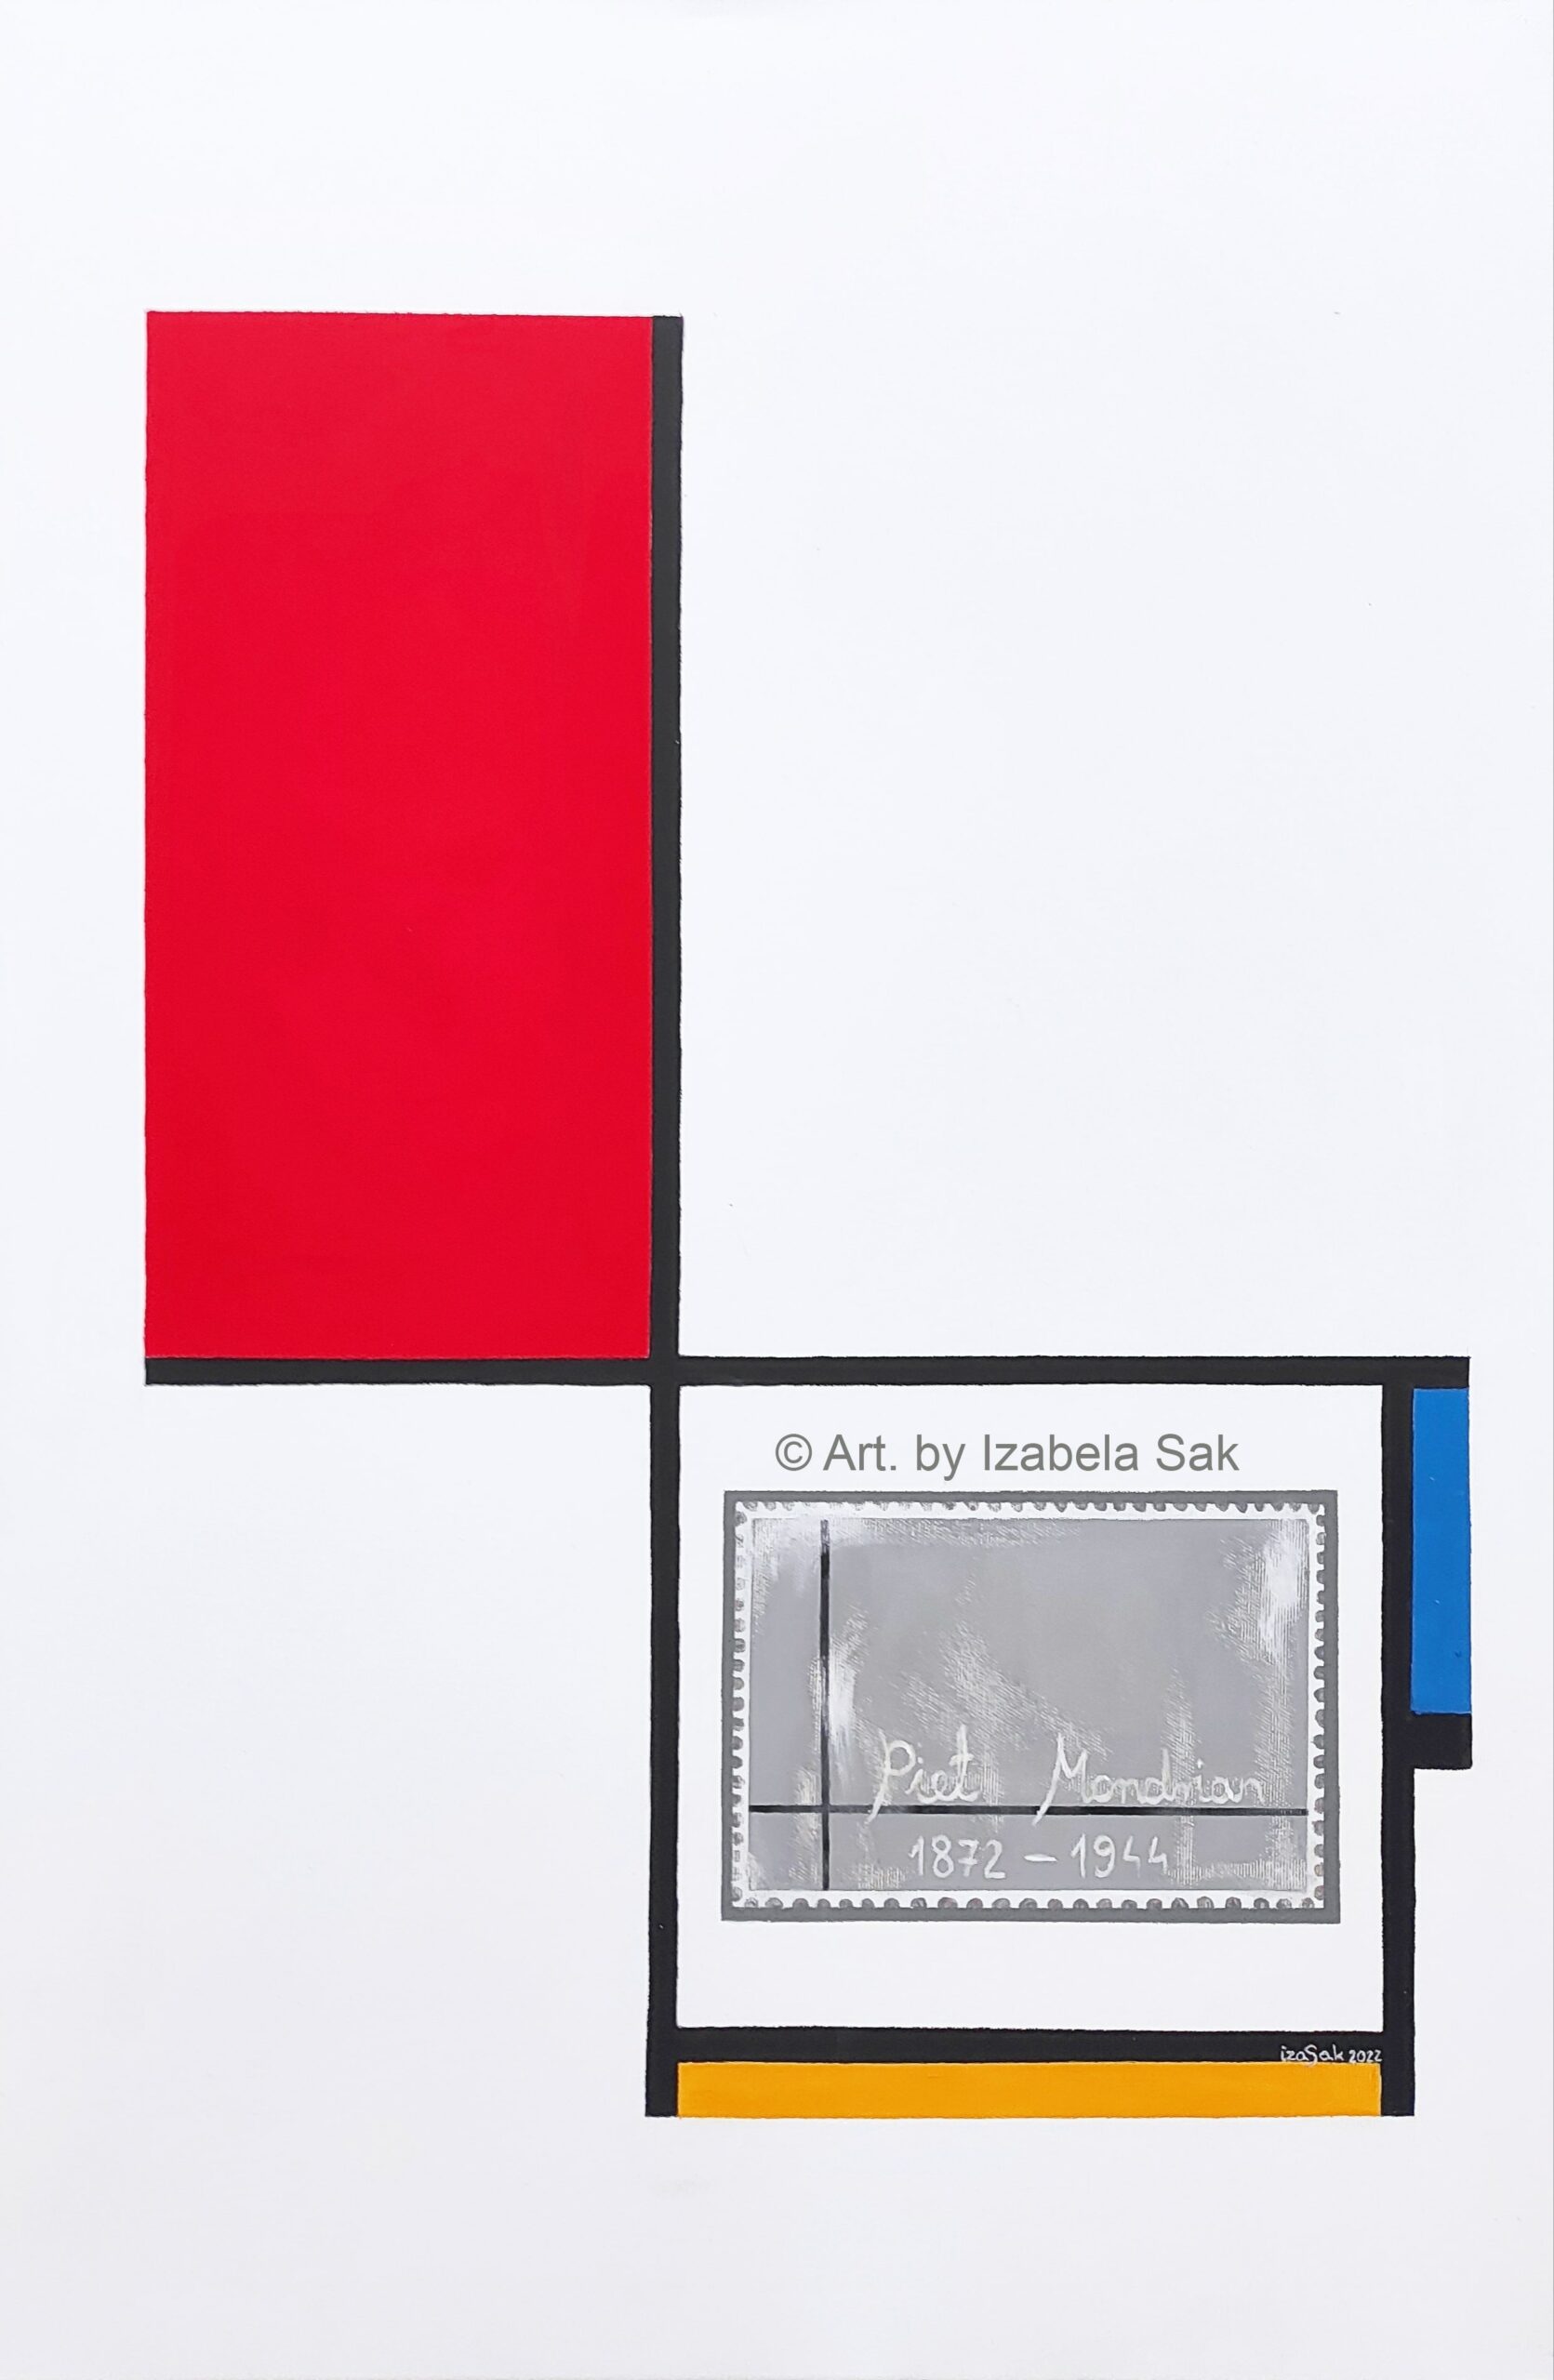 Akryl na płótnie. "Mondrianowi na zawsze Izabela". Rok 2022. 90cm x 60cm. Cena: 1500zł